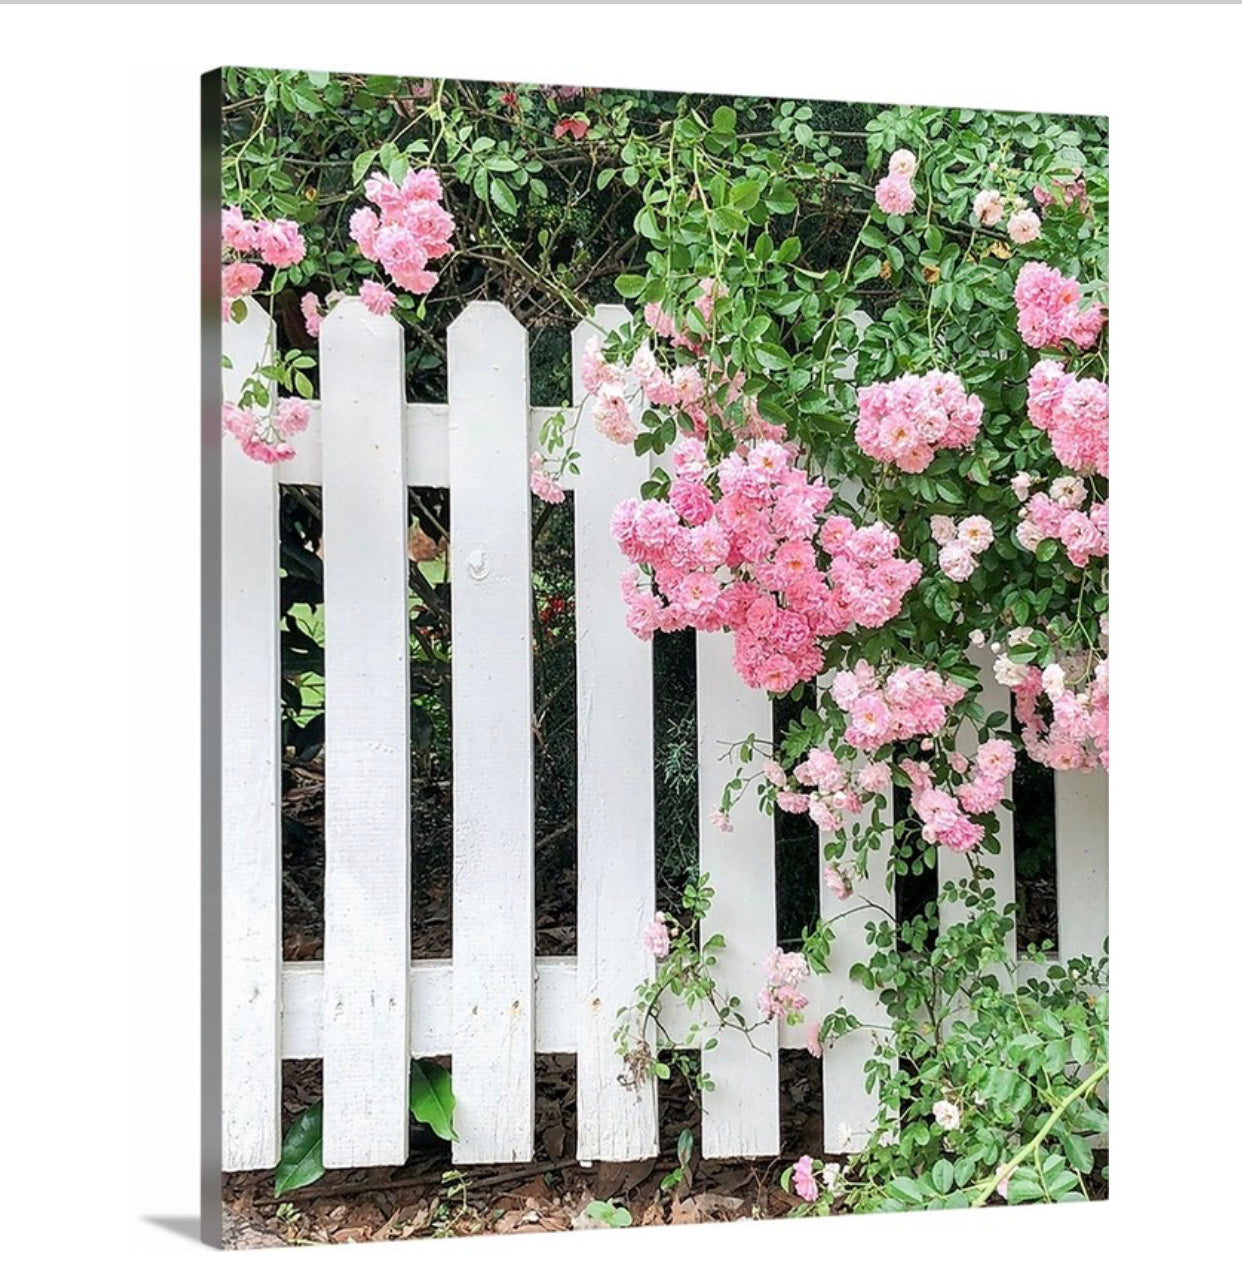 Valla de piquete blanca y lienzo envuelto en galería de rosas rosadas